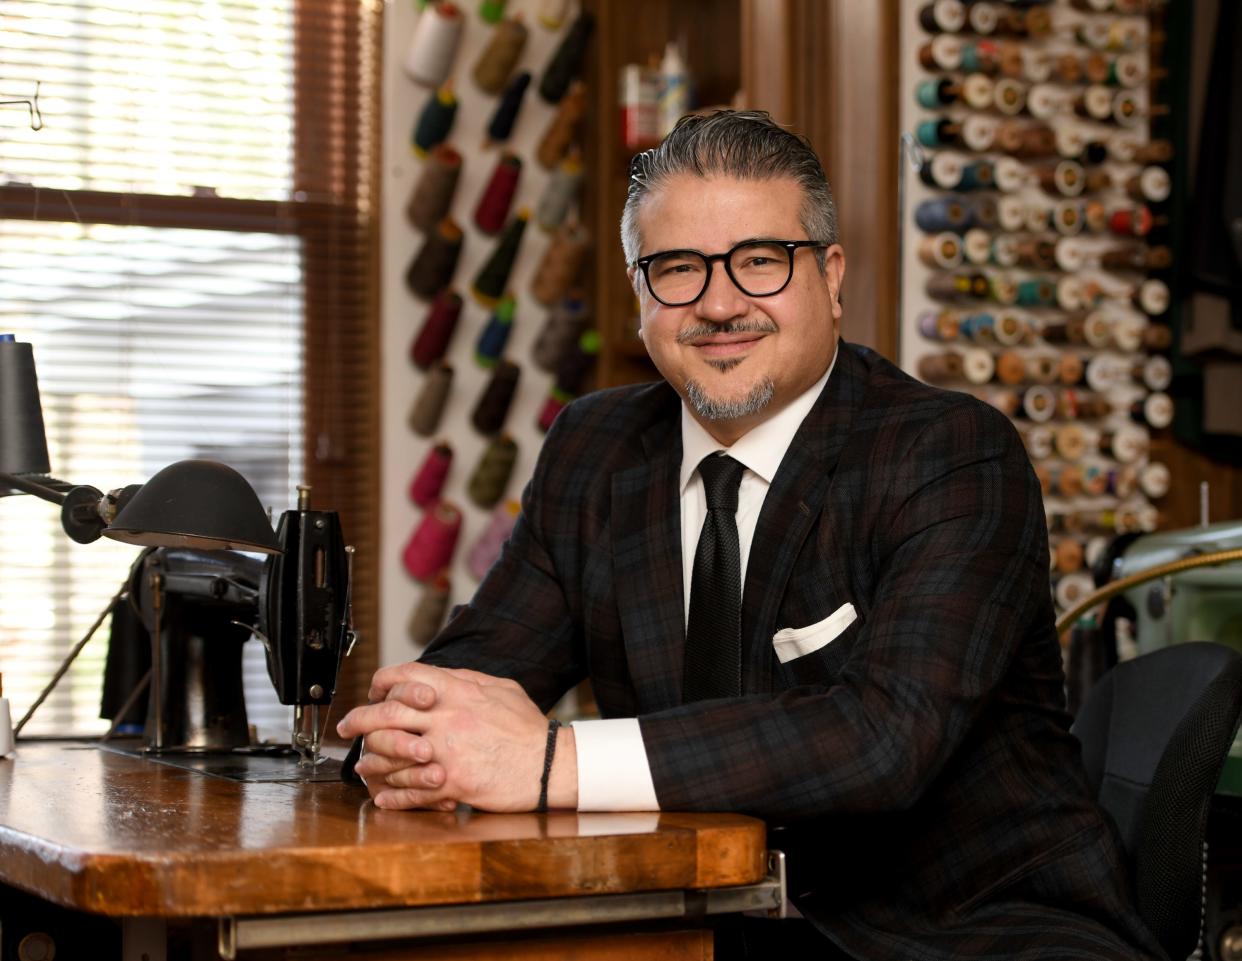 Steve Antoniades is owner of Steve's Tailoring & Men's Wear in Canton.